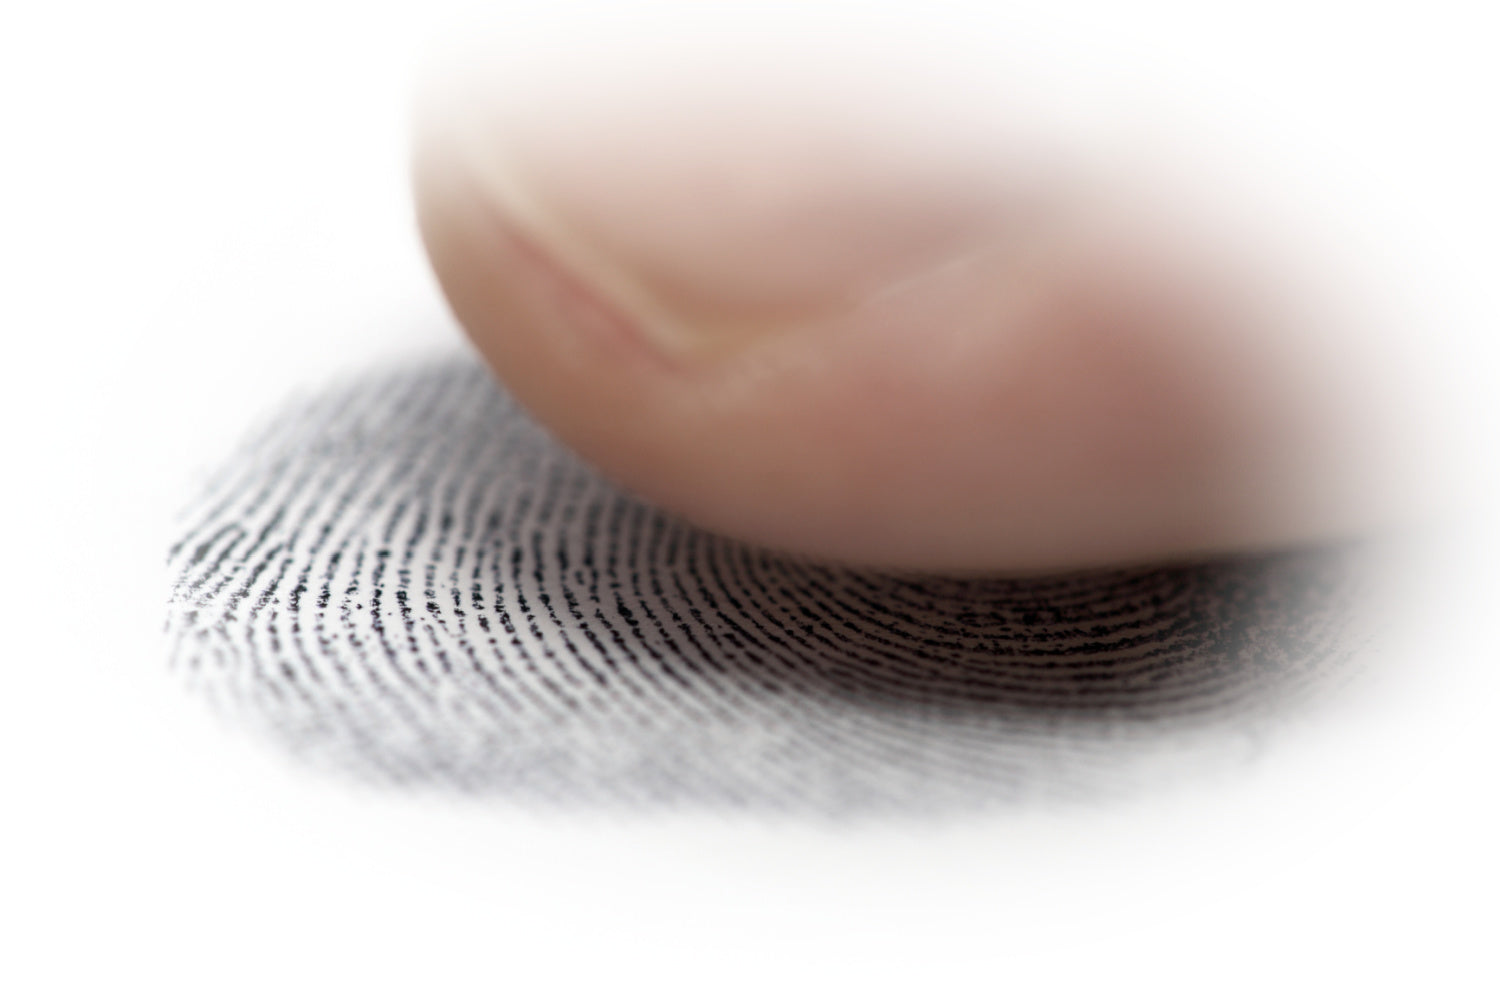 How Do I Get My Loved One's Fingerprint?